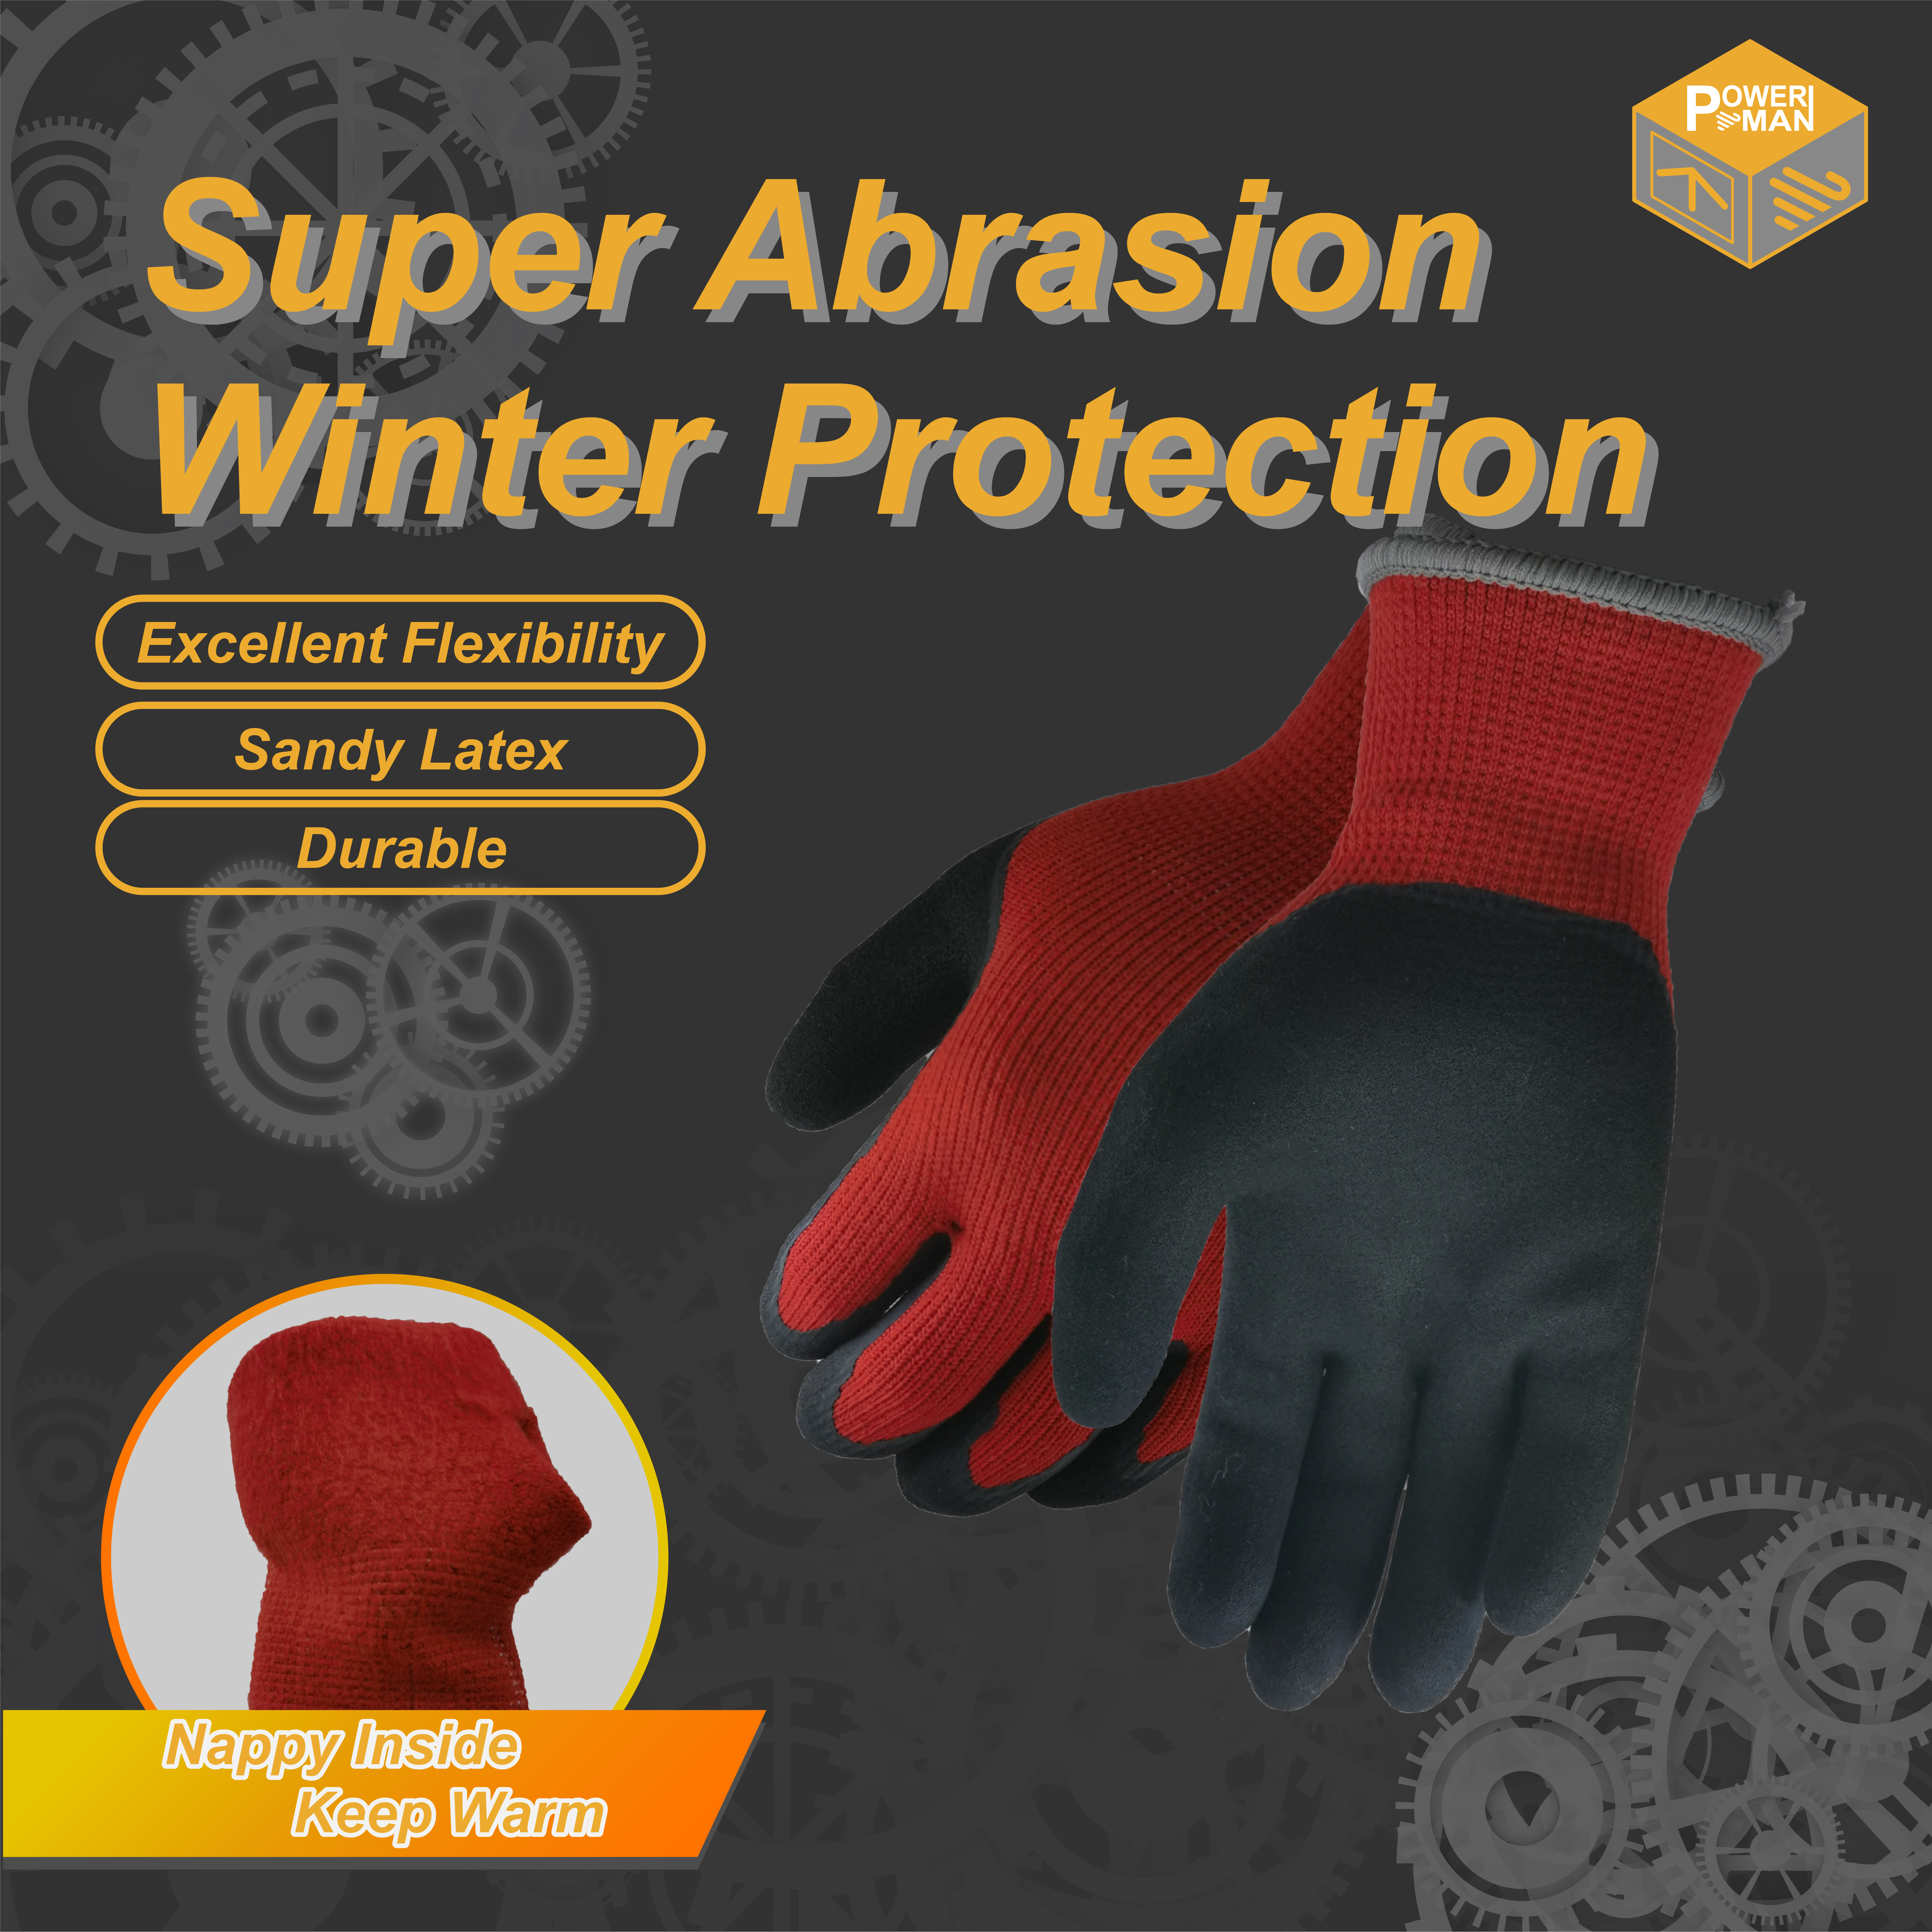 Powerman® 써멀 라이너 장갑은 저온으로부터 손을 보호합니다.